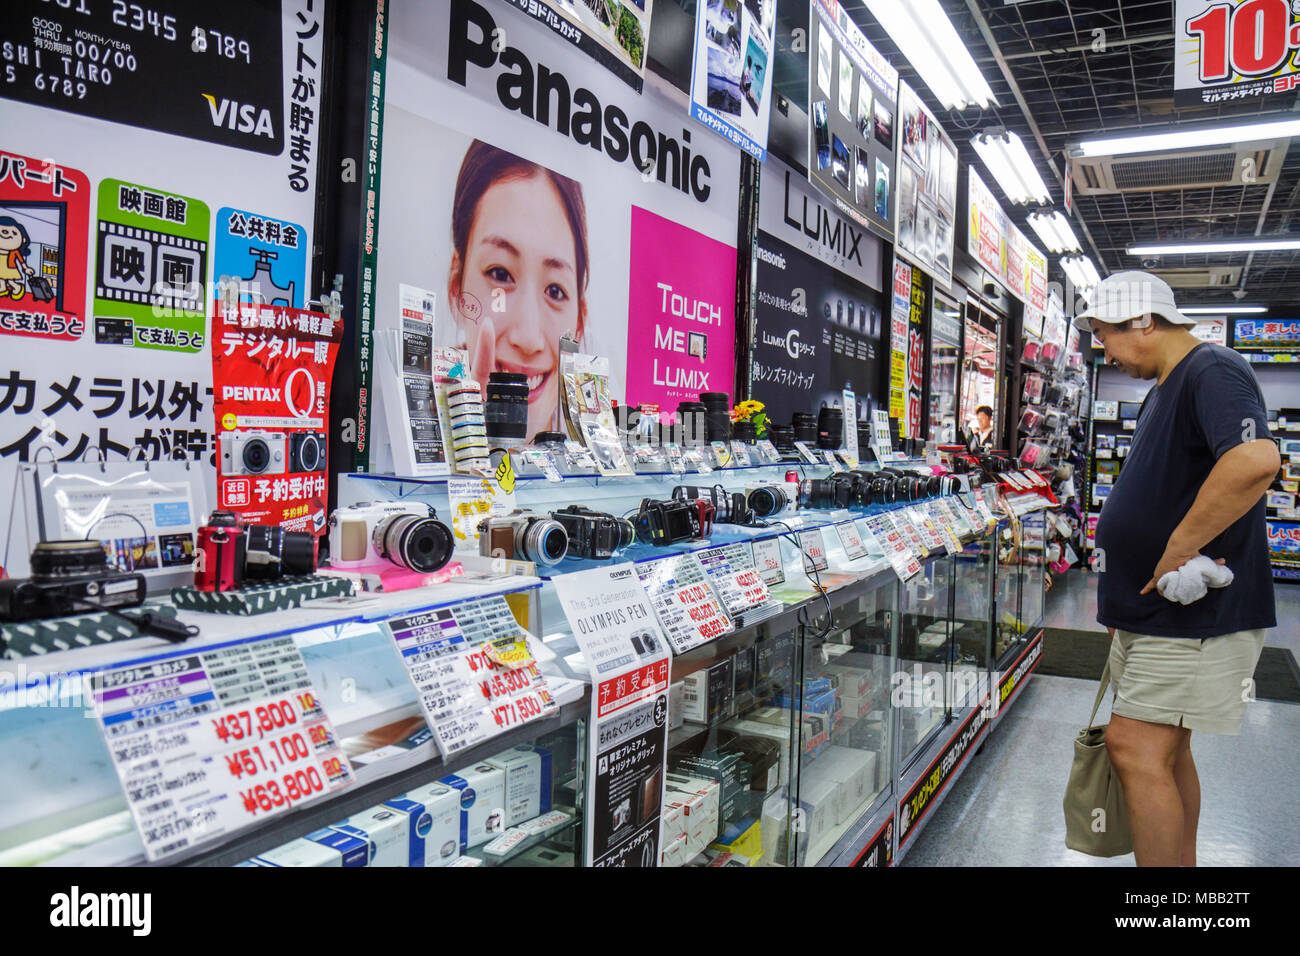 Tokyo Japan,Asia,Orient,Shinjuku,negozio di elettronica,fotocamere digitali,prodotti al dettaglio,vendita vetrina,merchandising,packaging,marche,marche,Panasonic,Pen Foto Stock